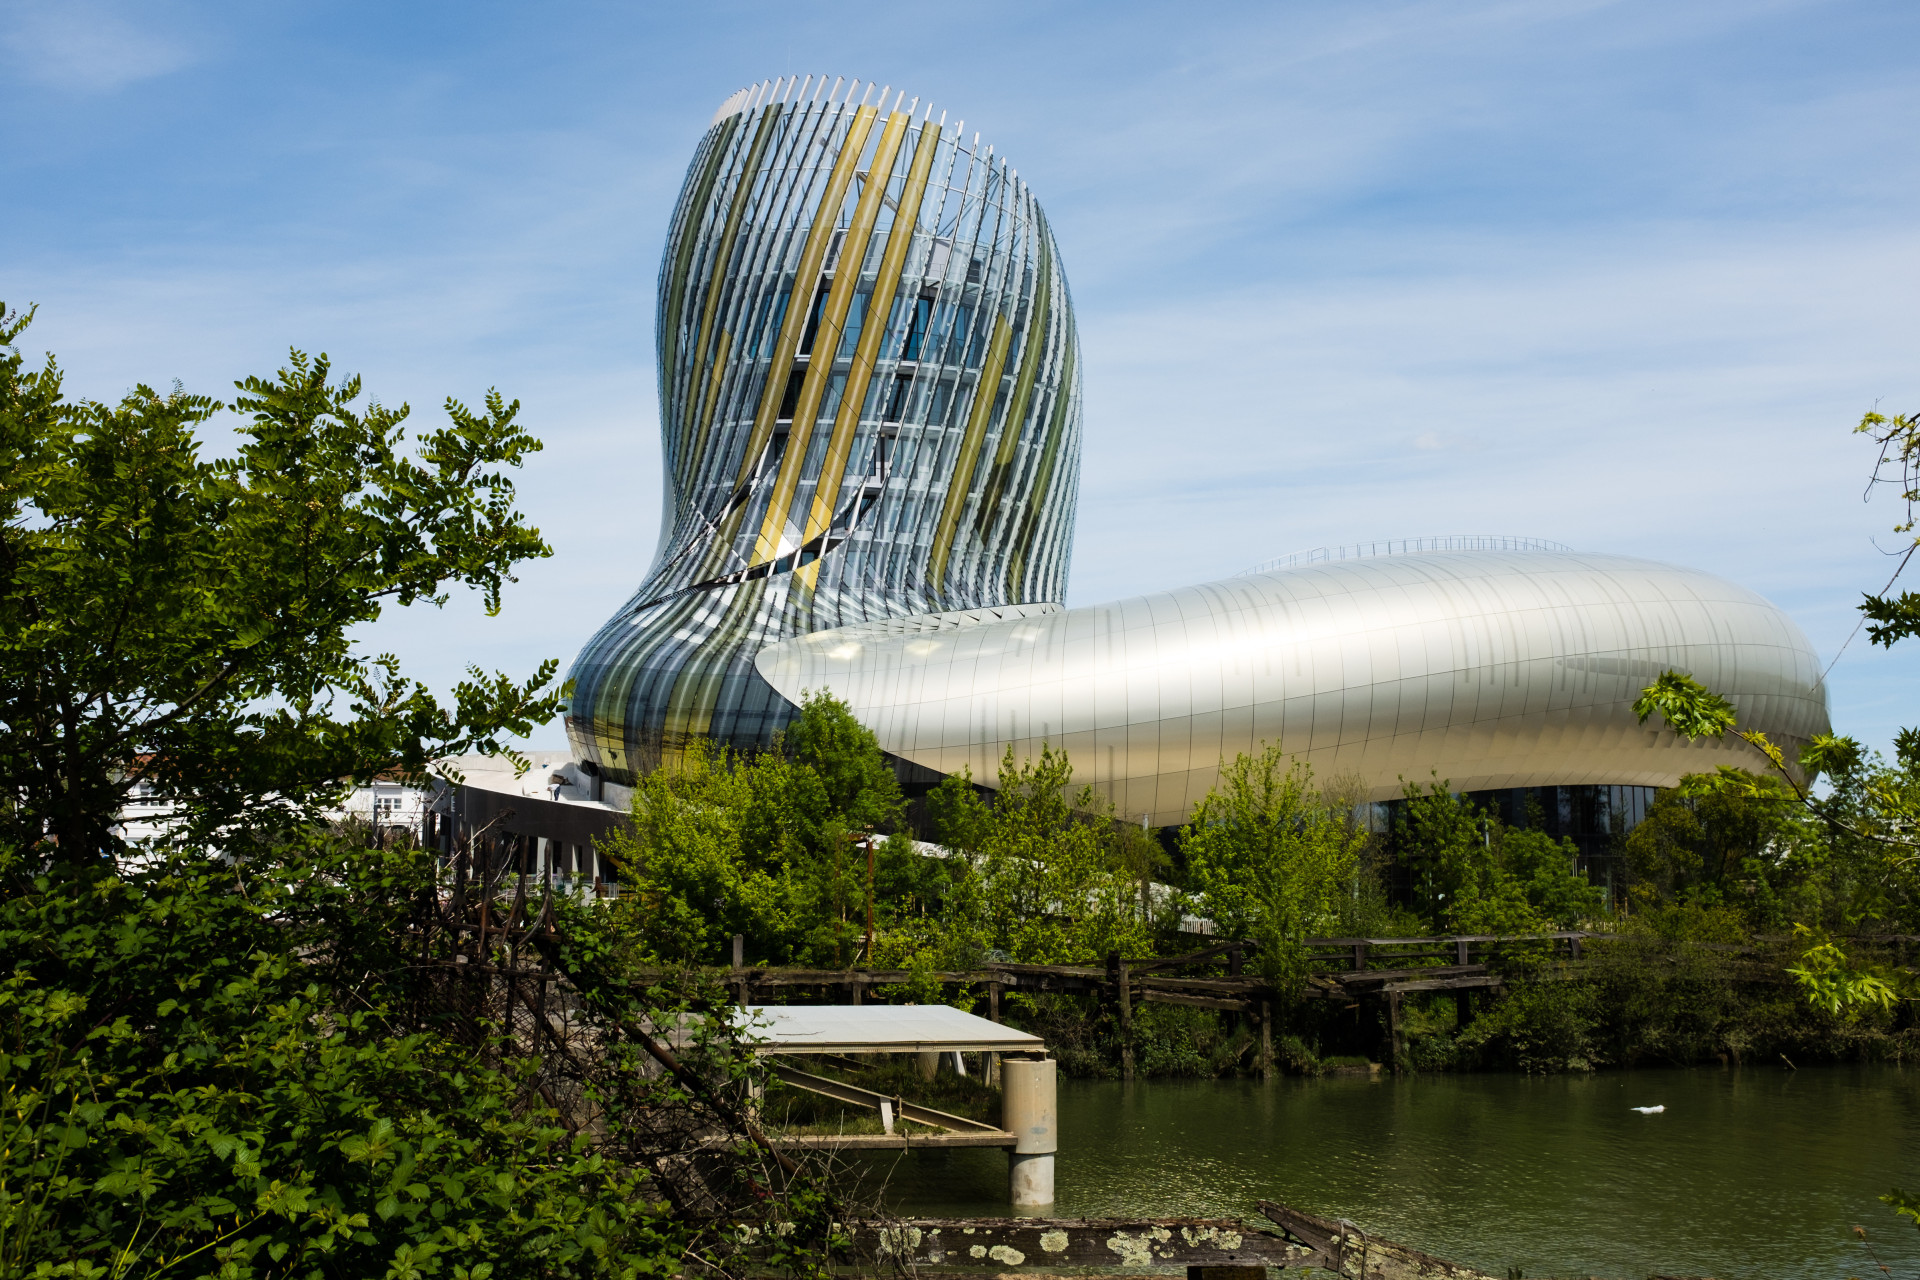 Inaugurée en 2016, la Cité du Vin, à Bordeaux, est un immense espace culturel dédié au vin. Le bâtiment a été conçu par les architectes Anouk Legendre et Nicolas Desmazières.<p><a href="https://www.msn.com/fr-fr/community/channel/vid-7xx8mnucu55yw63we9va2gwr7uihbxwc68fxqp25x6tg4ftibpra?cvid=94631541bc0f4f89bfd59158d696ad7e">Suivez-nous et accédez tous les jours à du contenu exclusif</a></p>